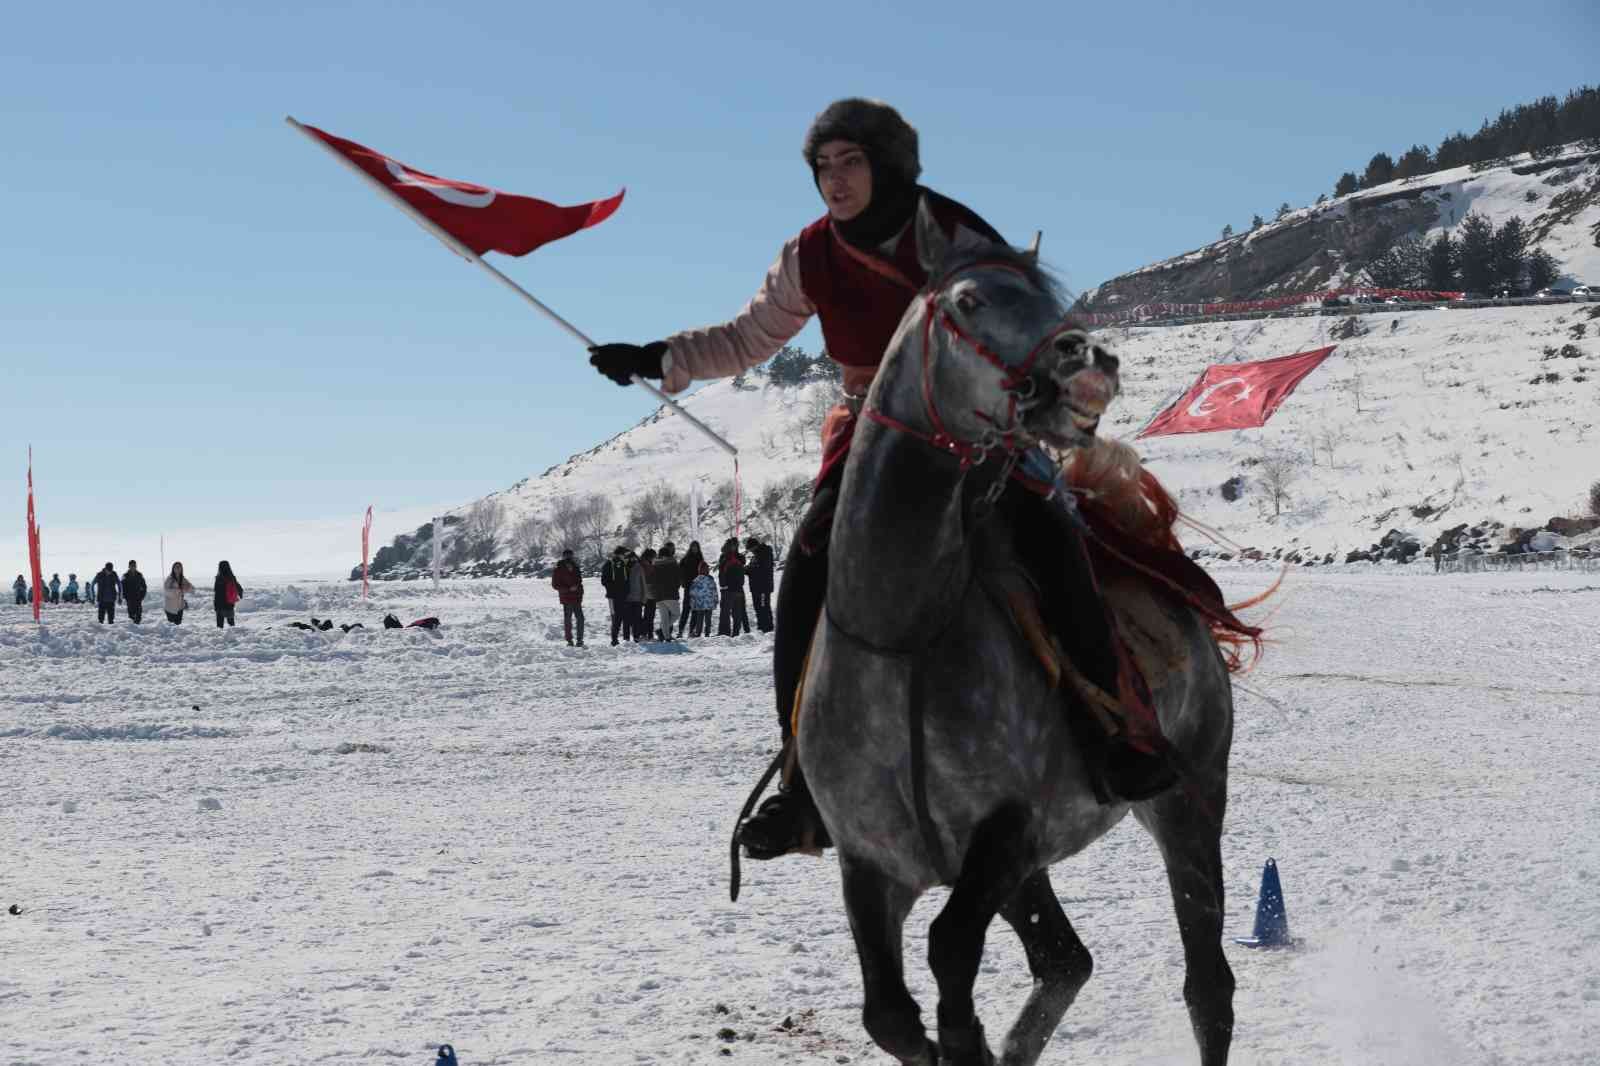 Çıldır Altın At Kristal Buz Festivali renkli görüntülere sahne oldu #ardahan